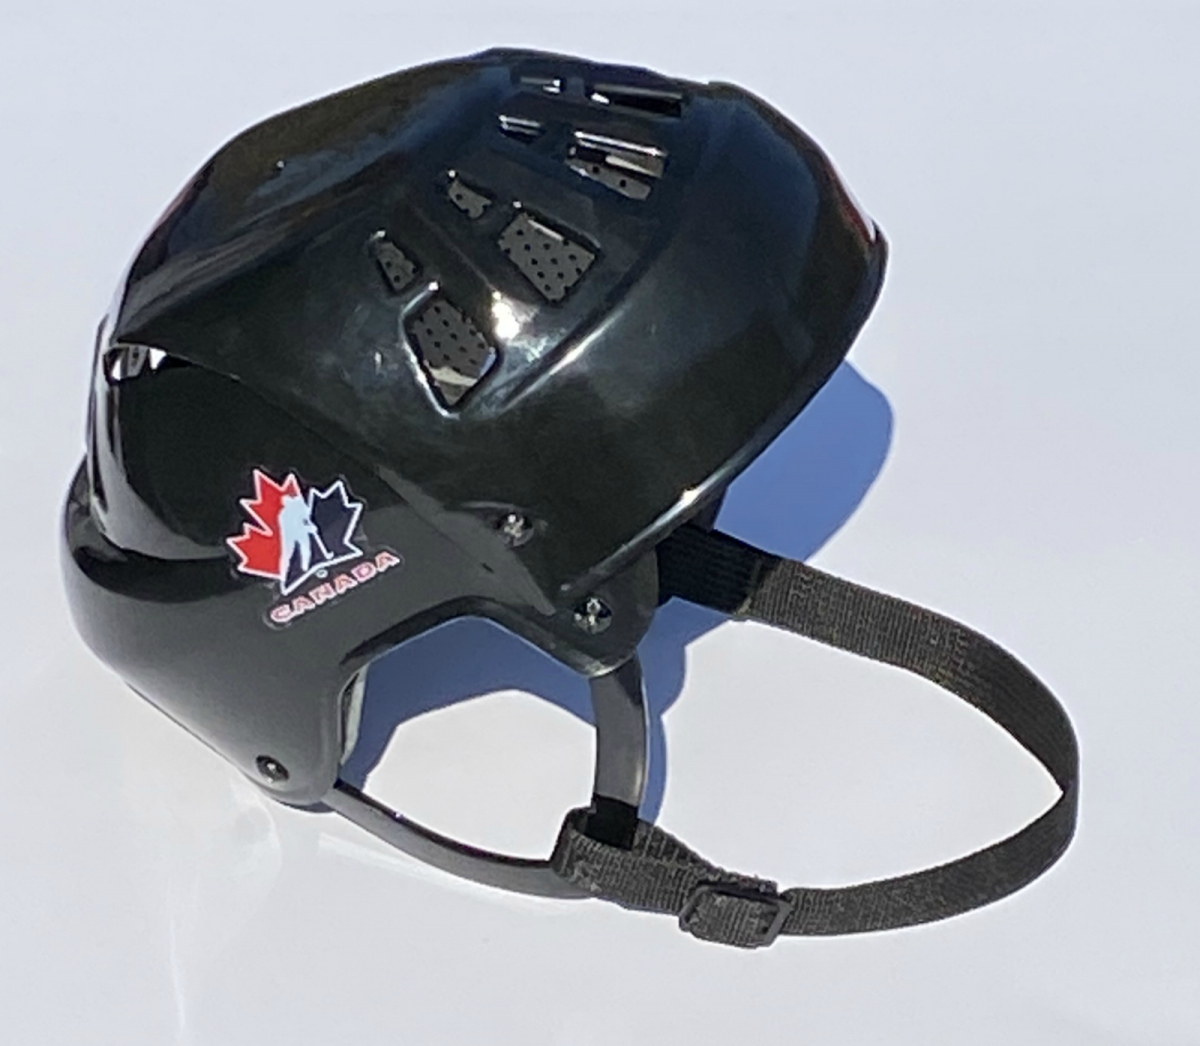 Хоккейный шлем Jofa